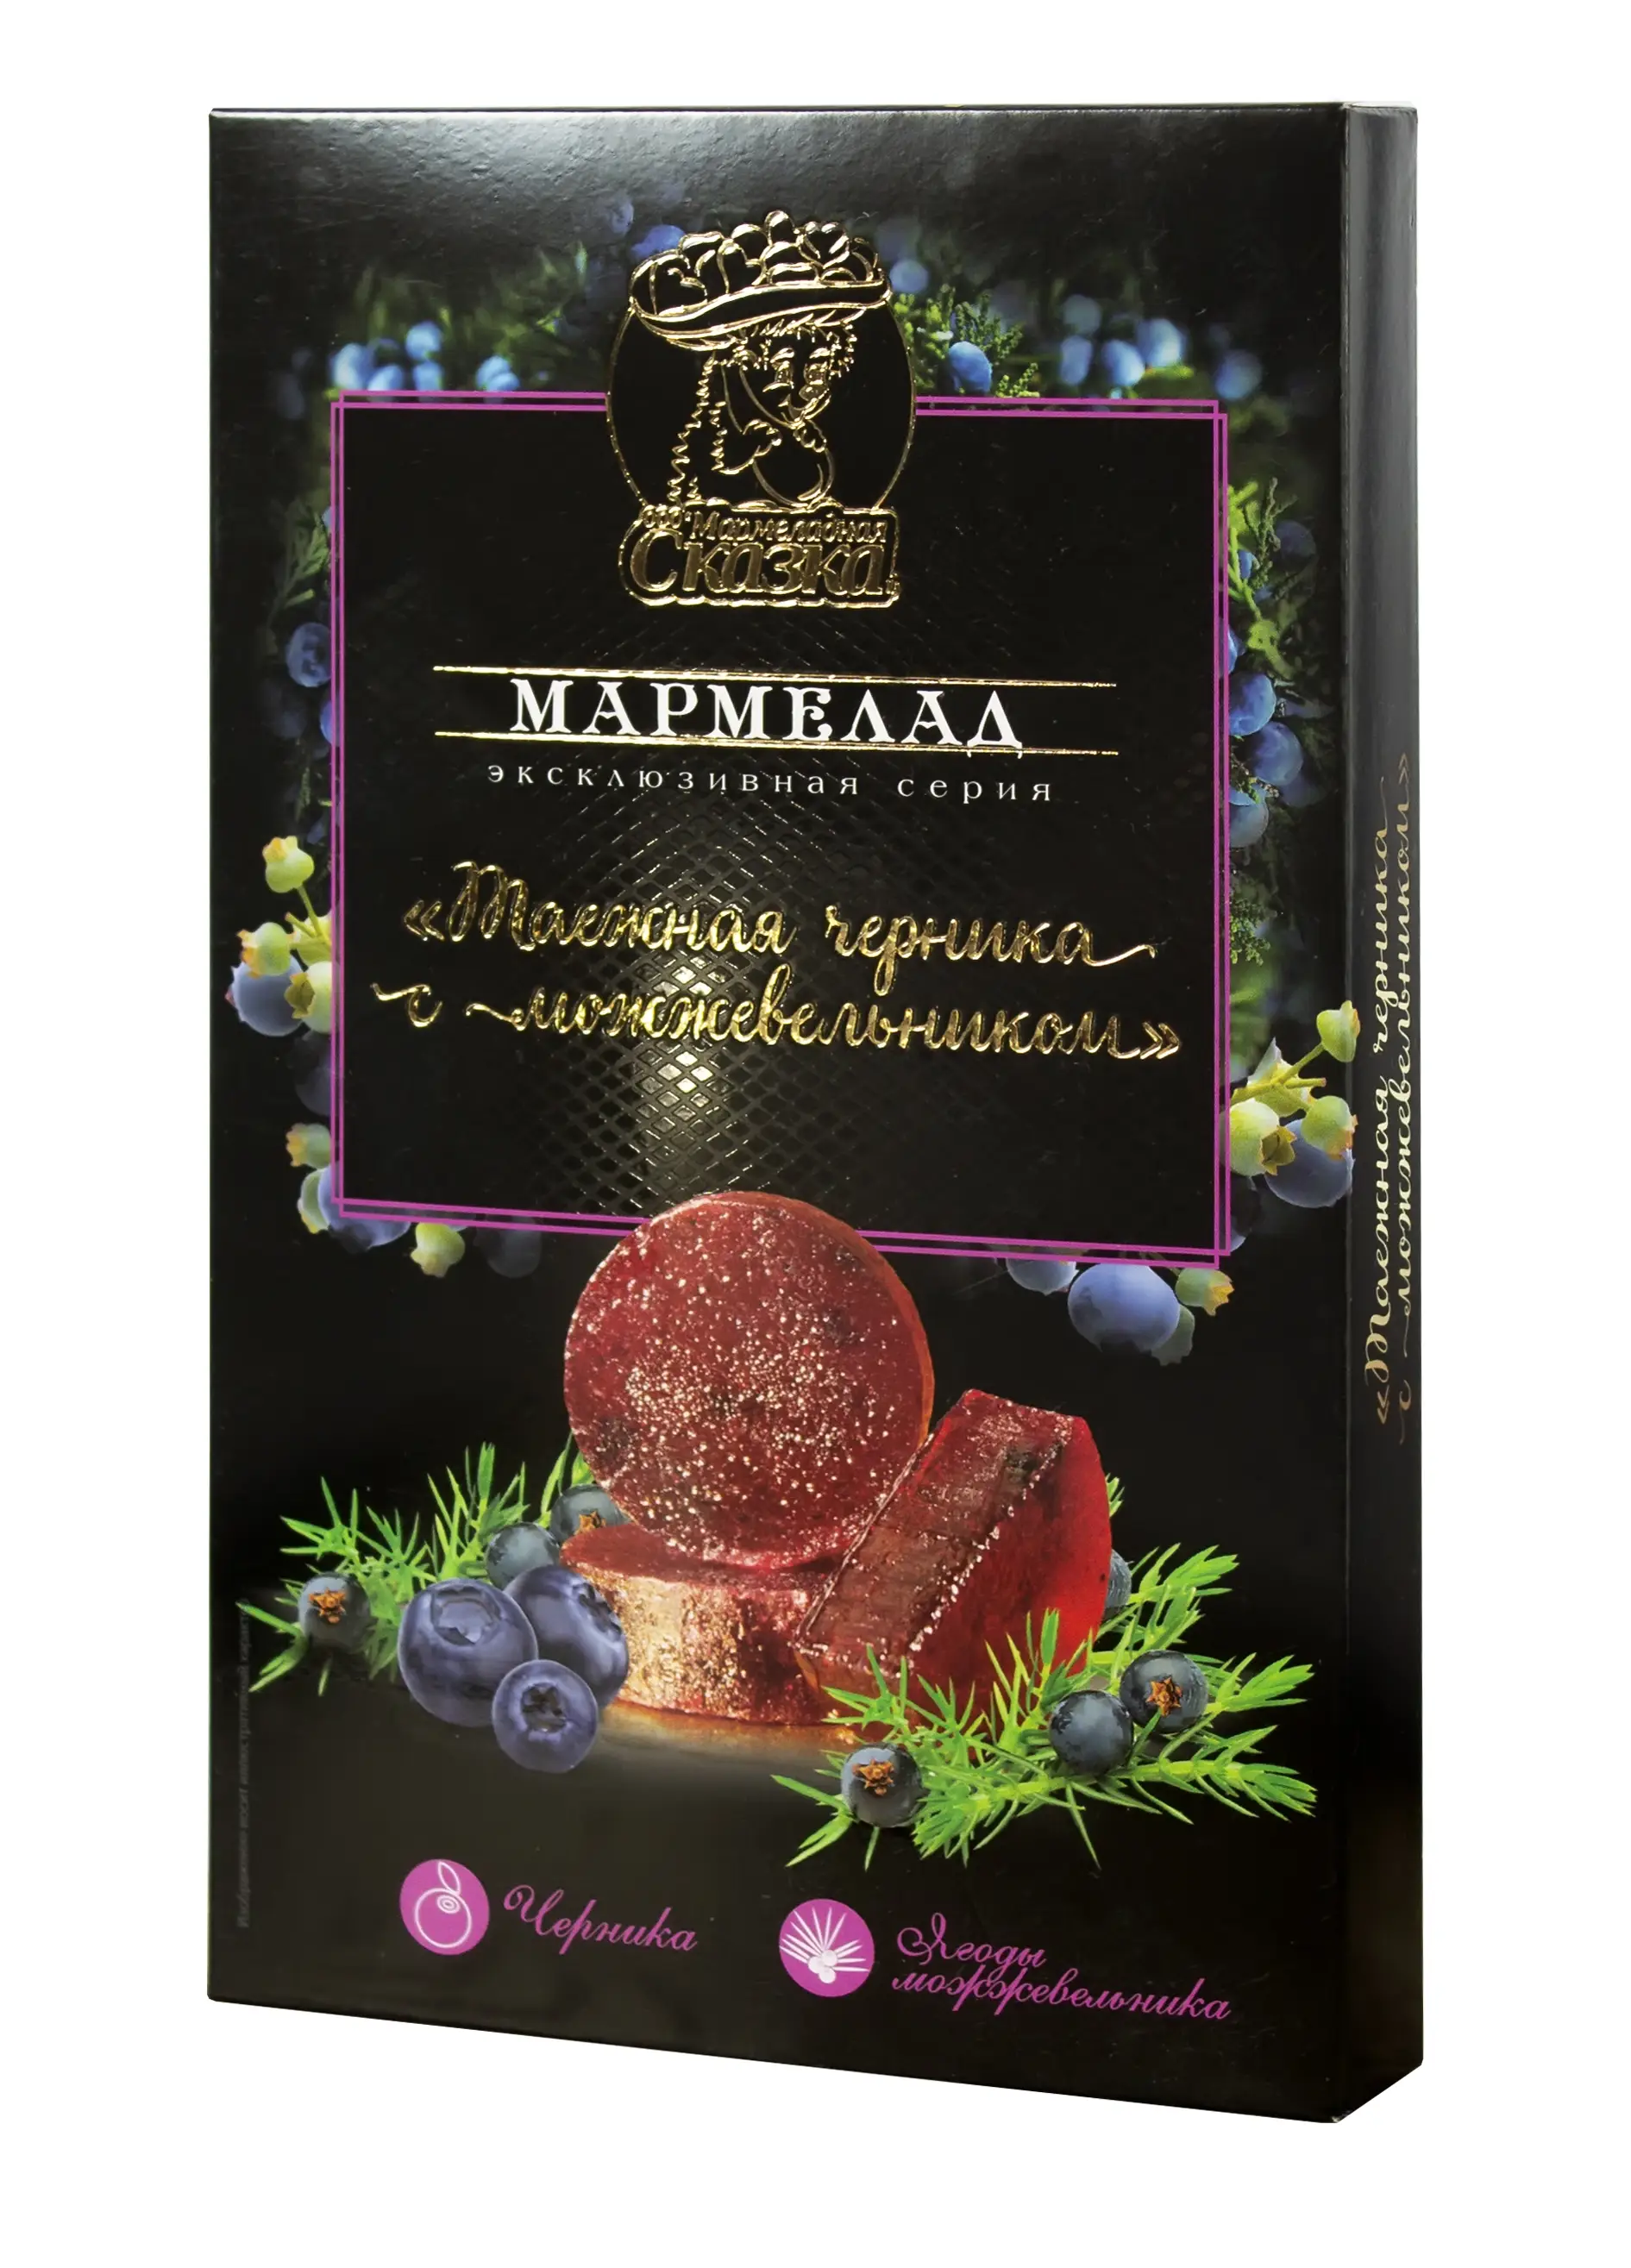 Мармелад желейный формовой Таежная черника черника и ягоды можжевельника 170 гр.